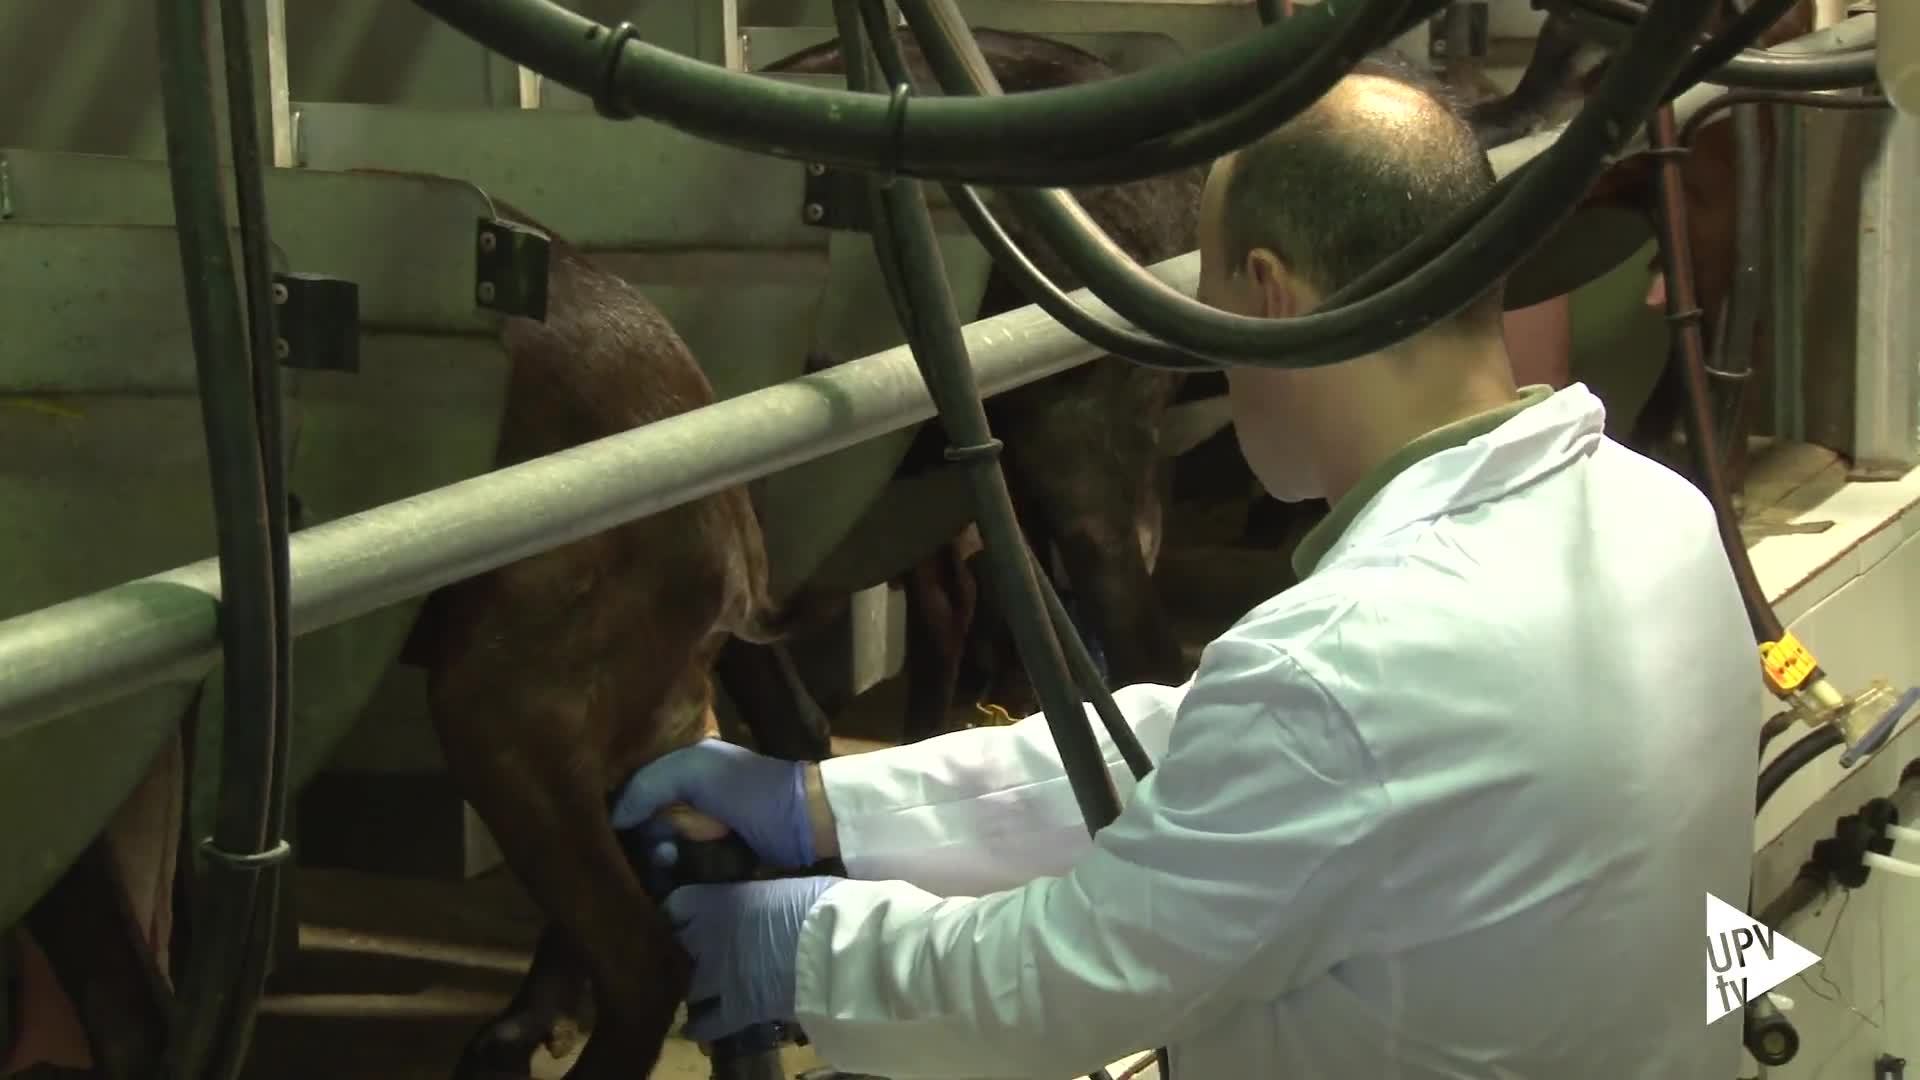 29-06-2016 Alimentar cabras con maralfalfa reduce costes producción leche